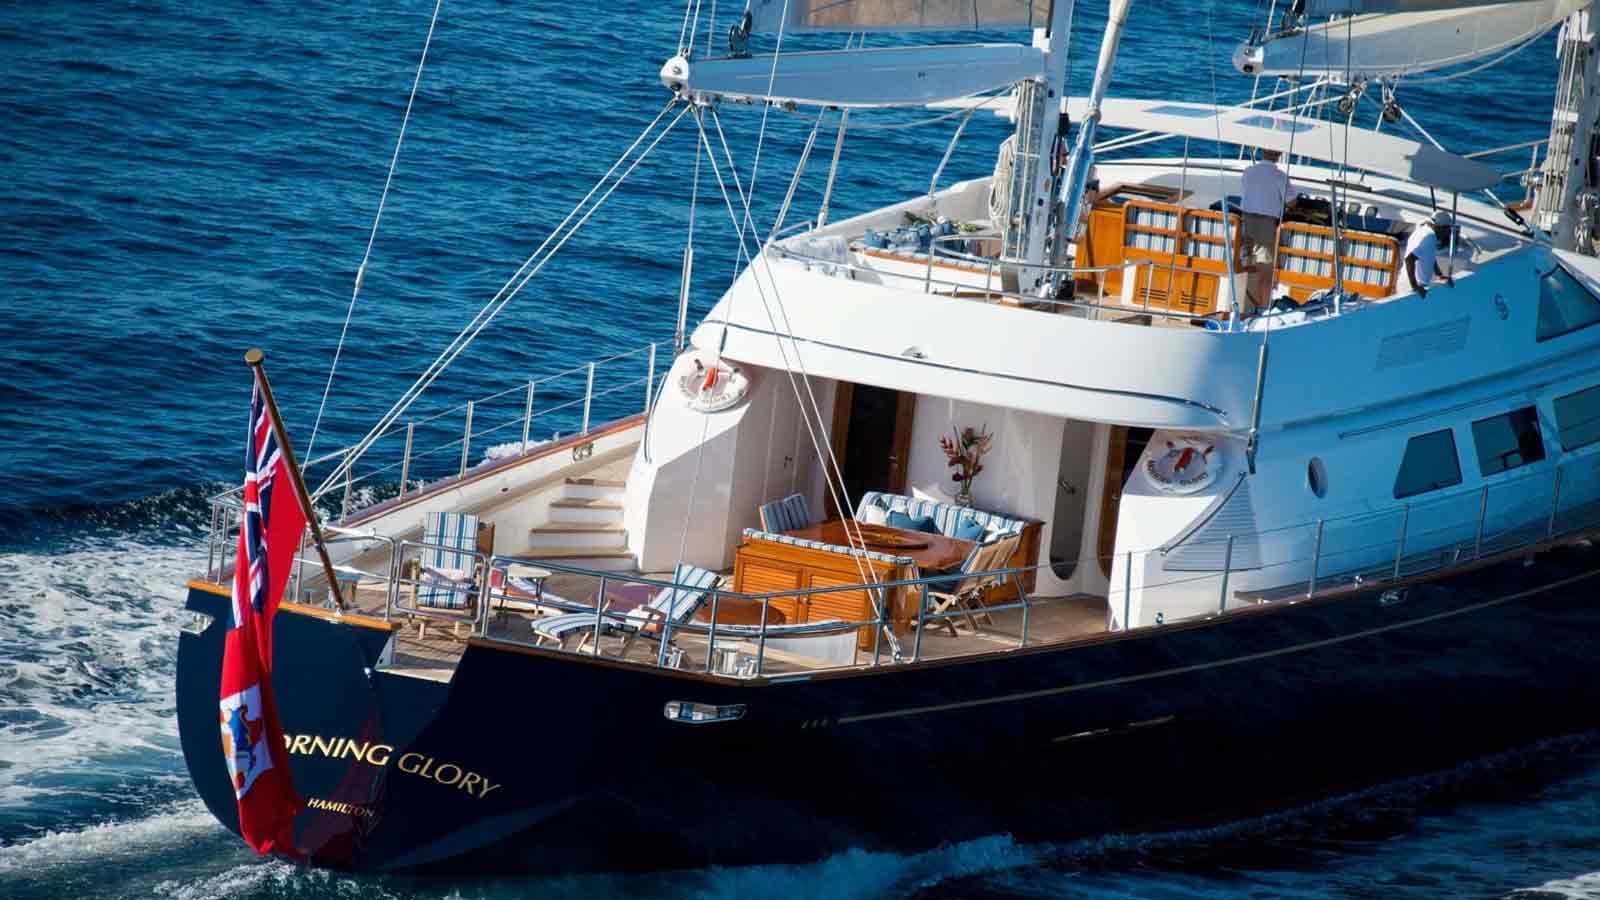 Morning Glory – siêu du thuyền buồm được tỷ phú Silvio Berlusconi rao bán với giá 11 triệu USD